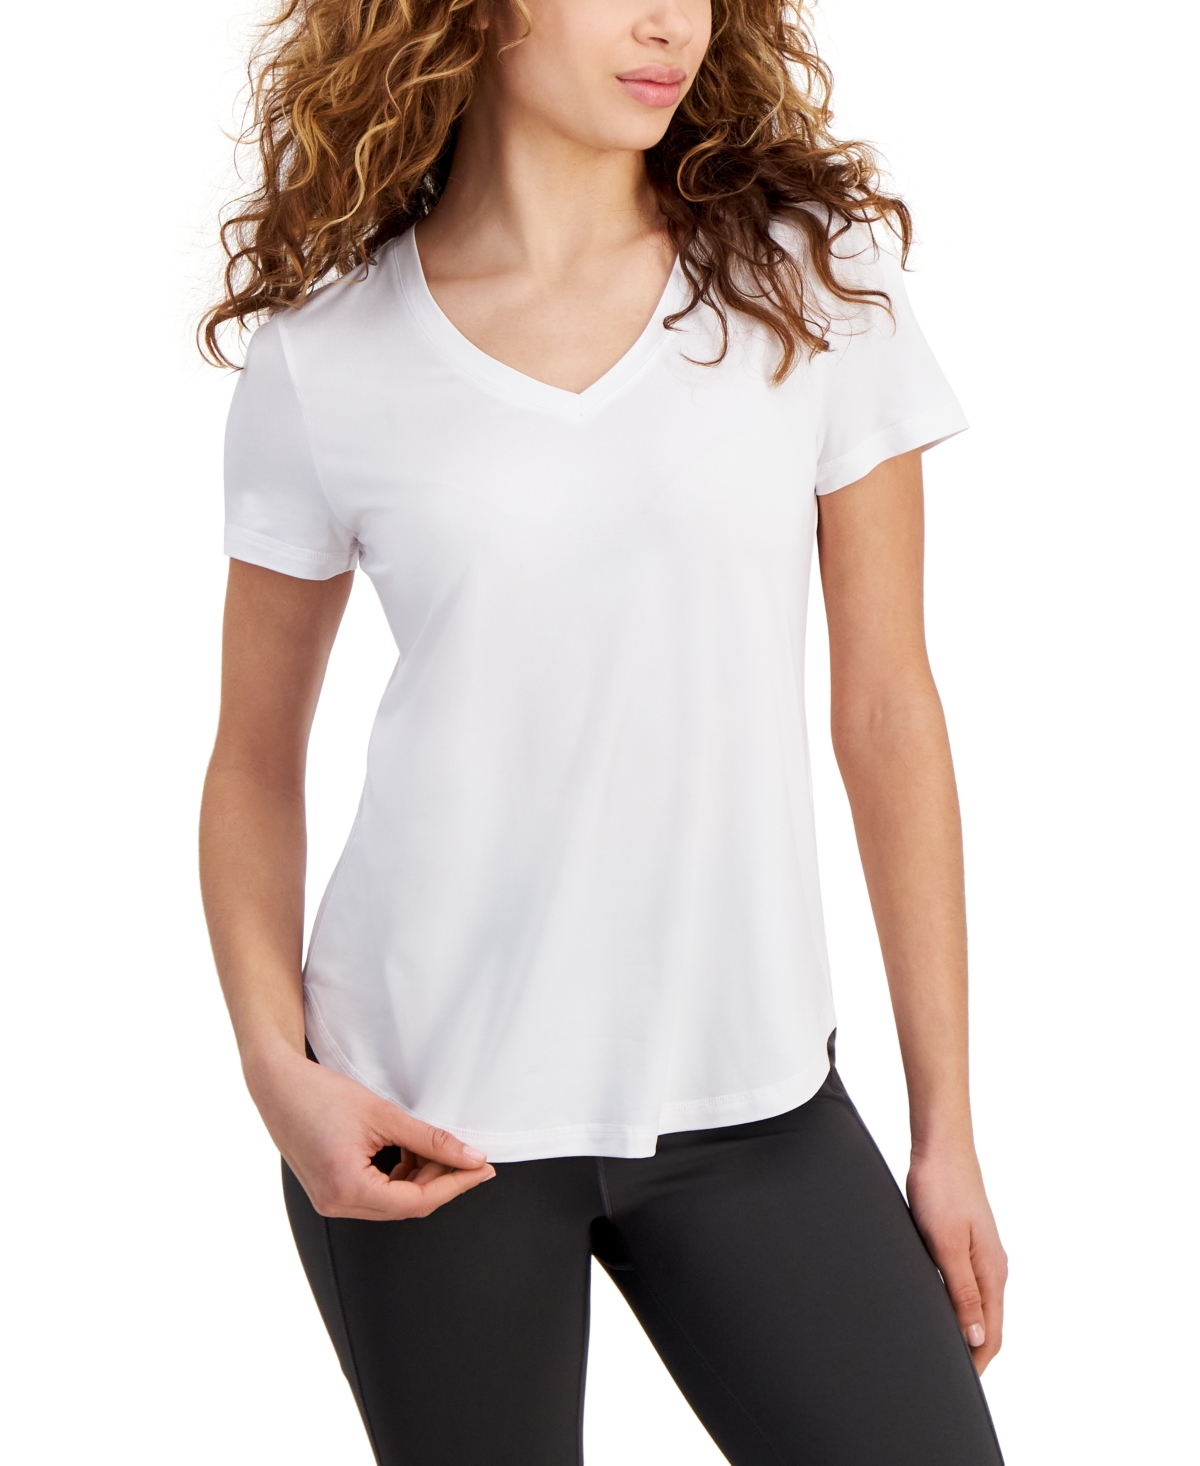 Women's V-Neck Short-Sleeve T-Shirt, Created for Macy's - Bright White